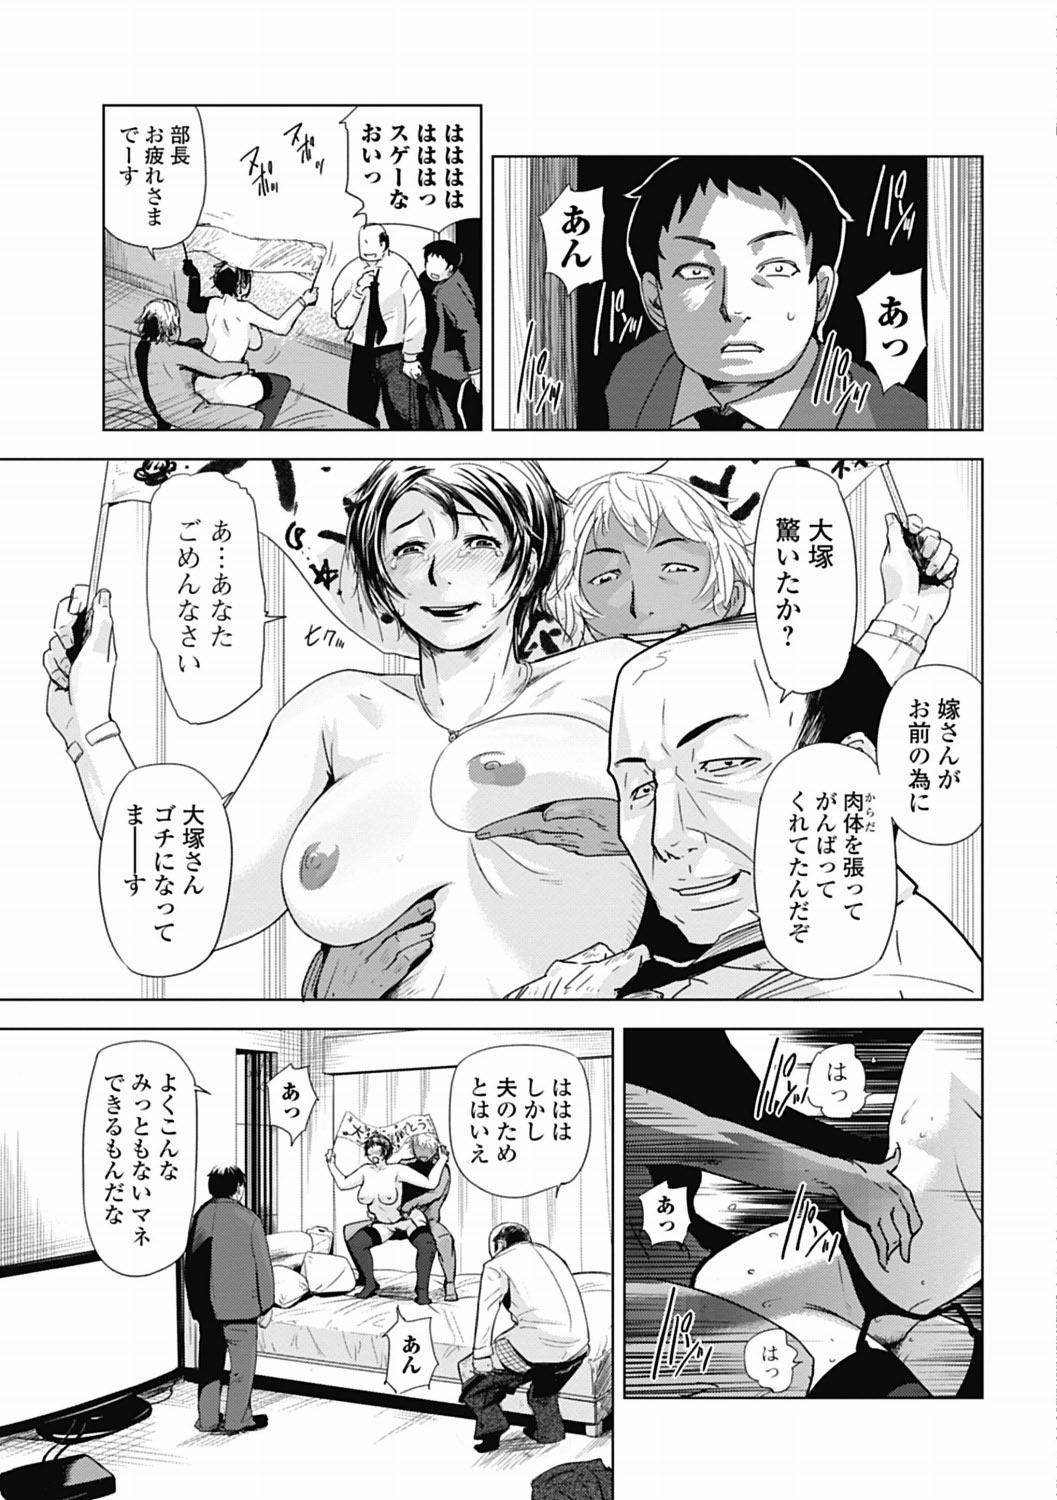 Bishoujo Kakumei KIWAME 2012-04 Vol.19 181